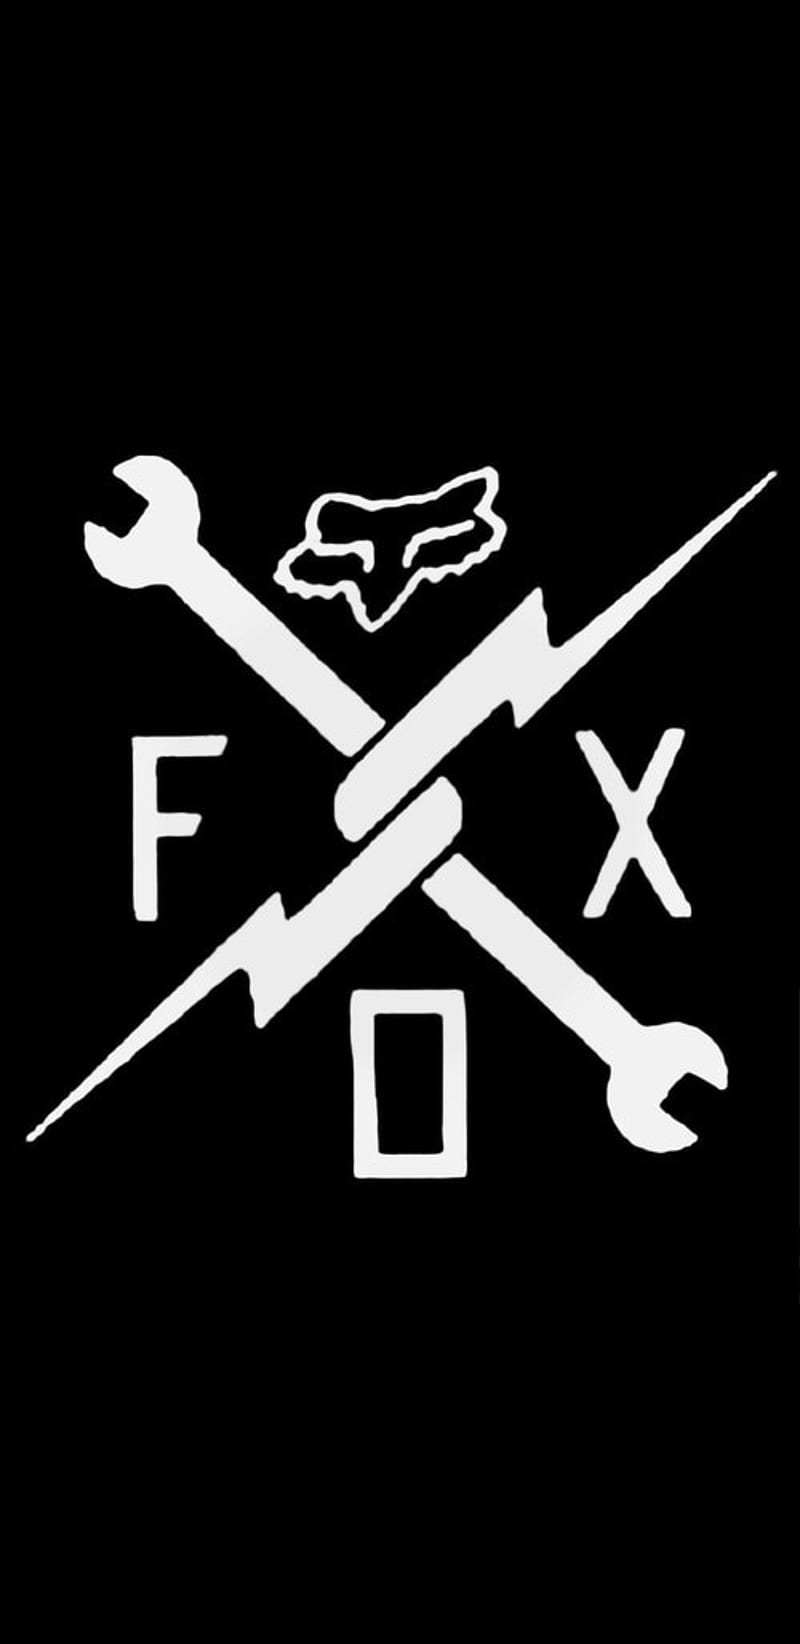 Fox racing Ozkr, fox, fox racing, logo